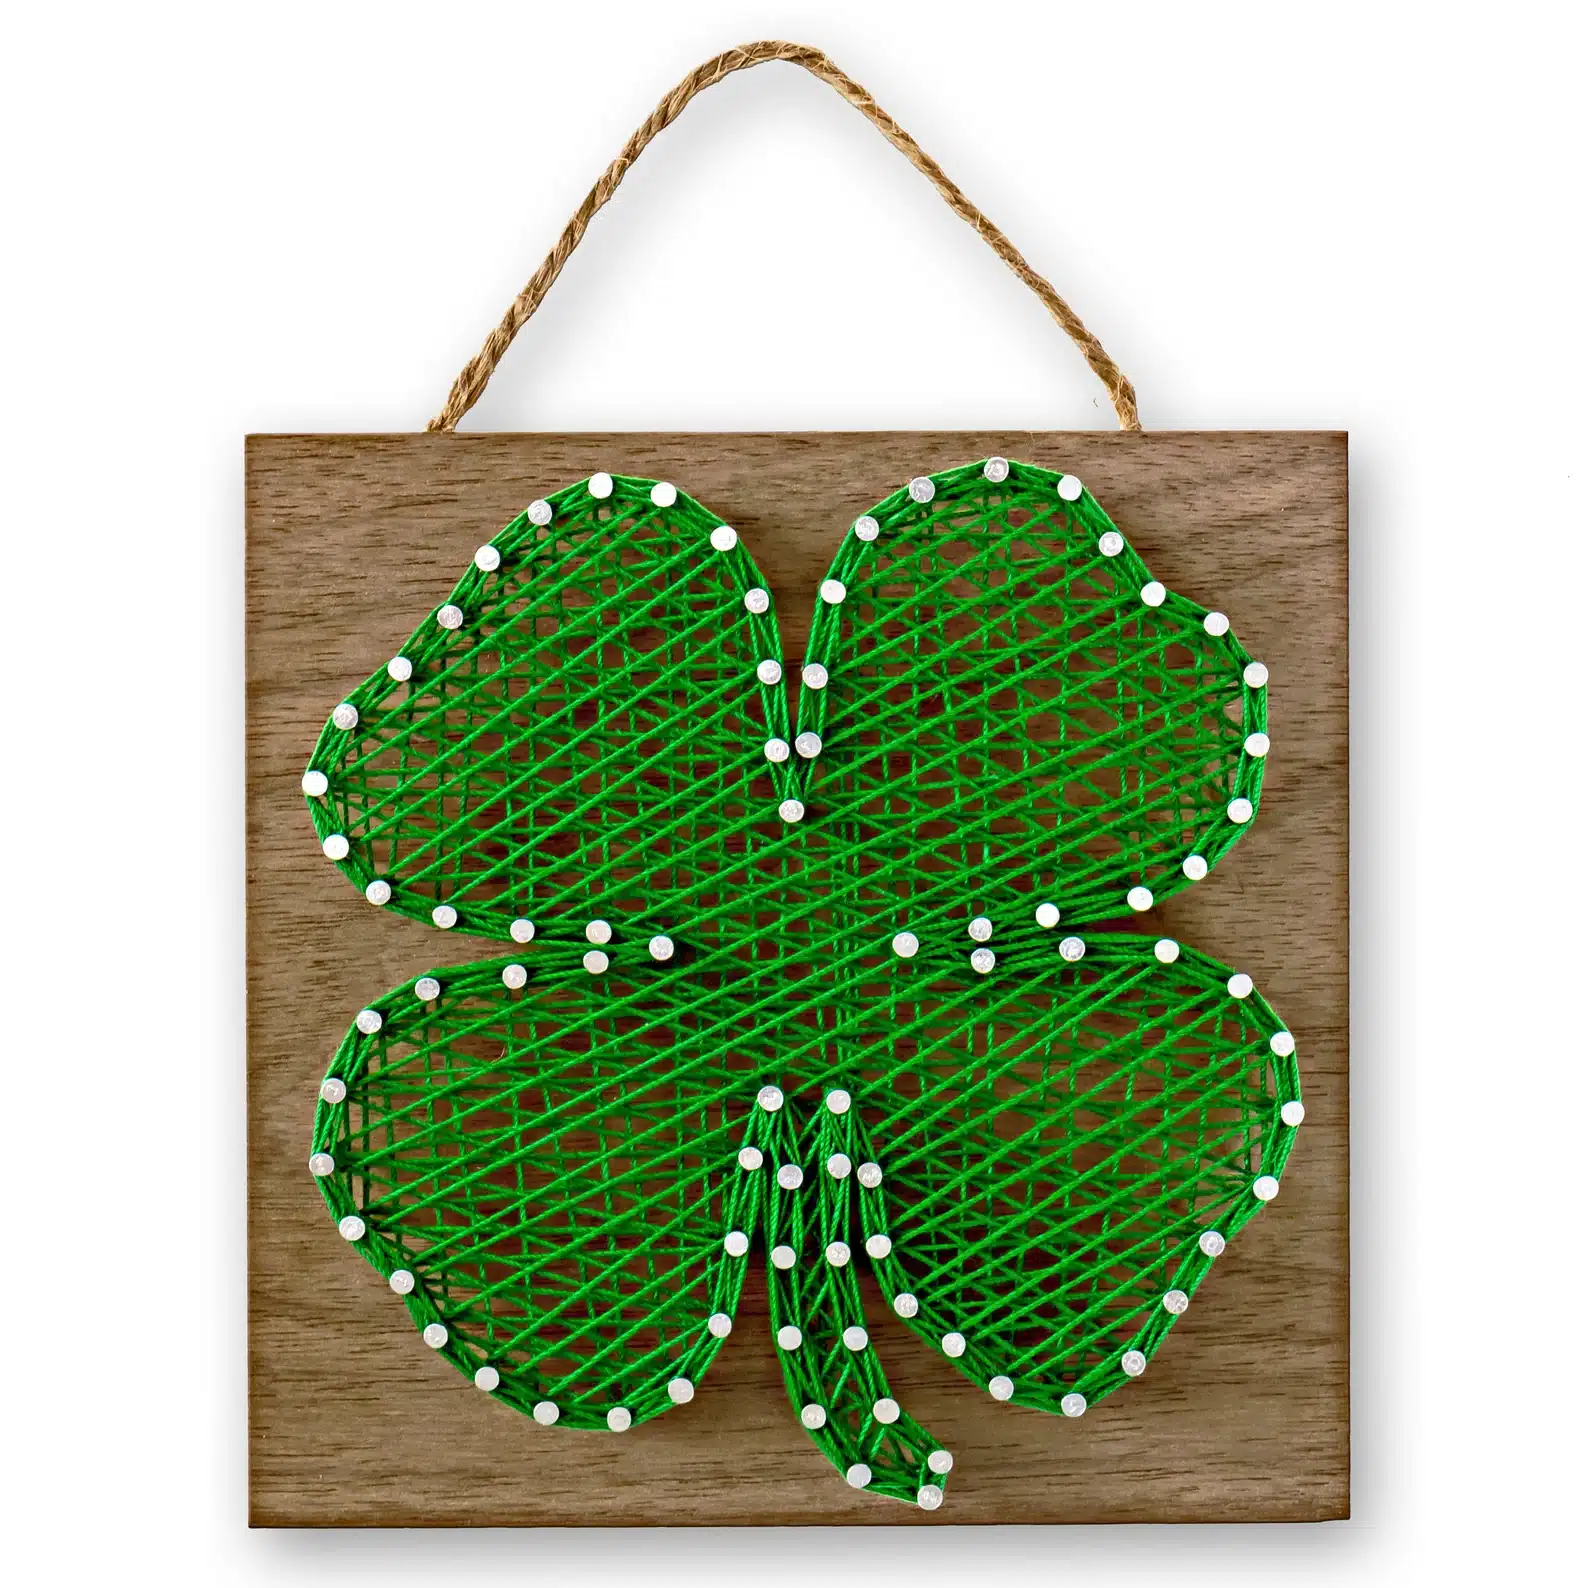 Leaf Clover String Art Kit DIY Adult